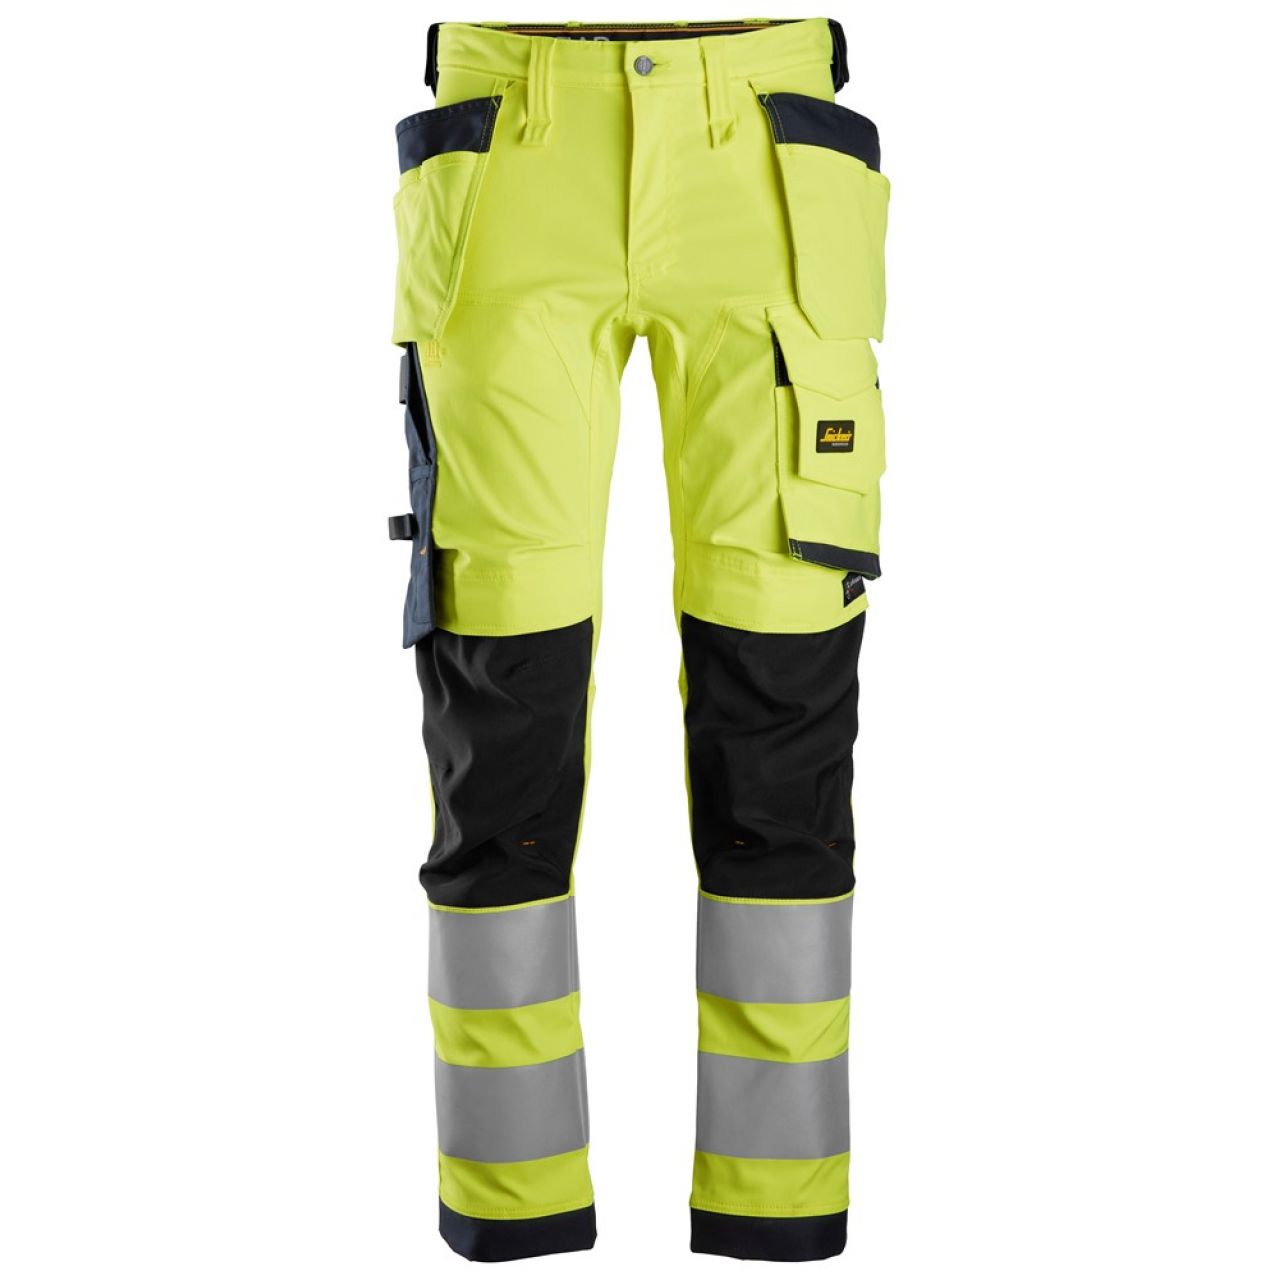 6243 Pantalones largos de trabajo elásticos de alta visibilidad clase 2 con bolsillos flotantes amarillo-azul marino talla 252